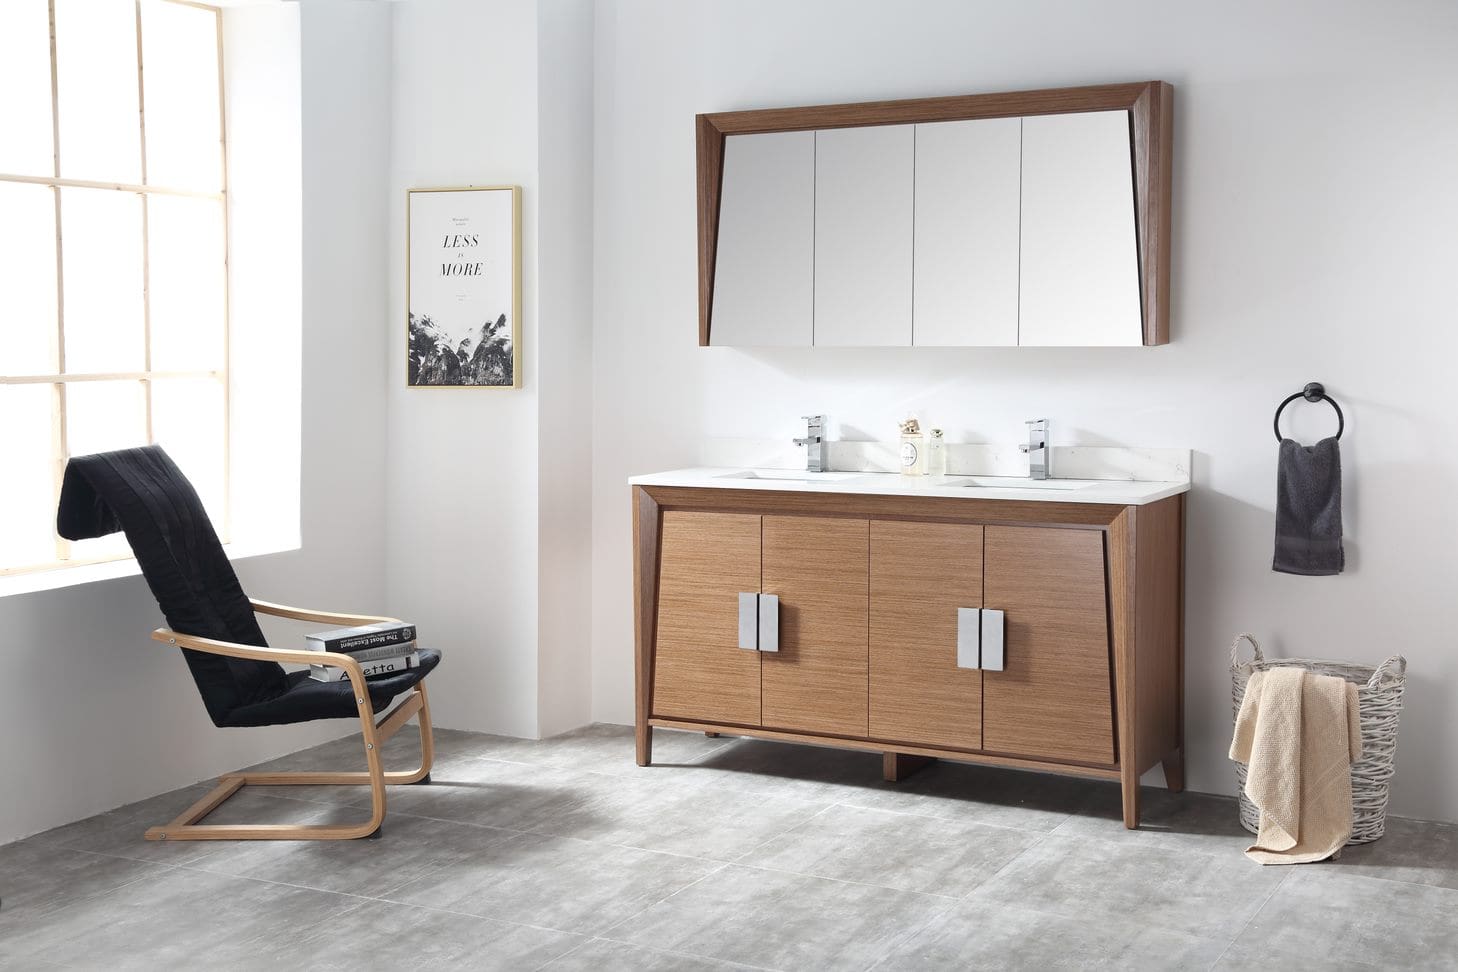 60" Larvotto Double Vanity with White Quartz Top - Modern Bathroom Vanity